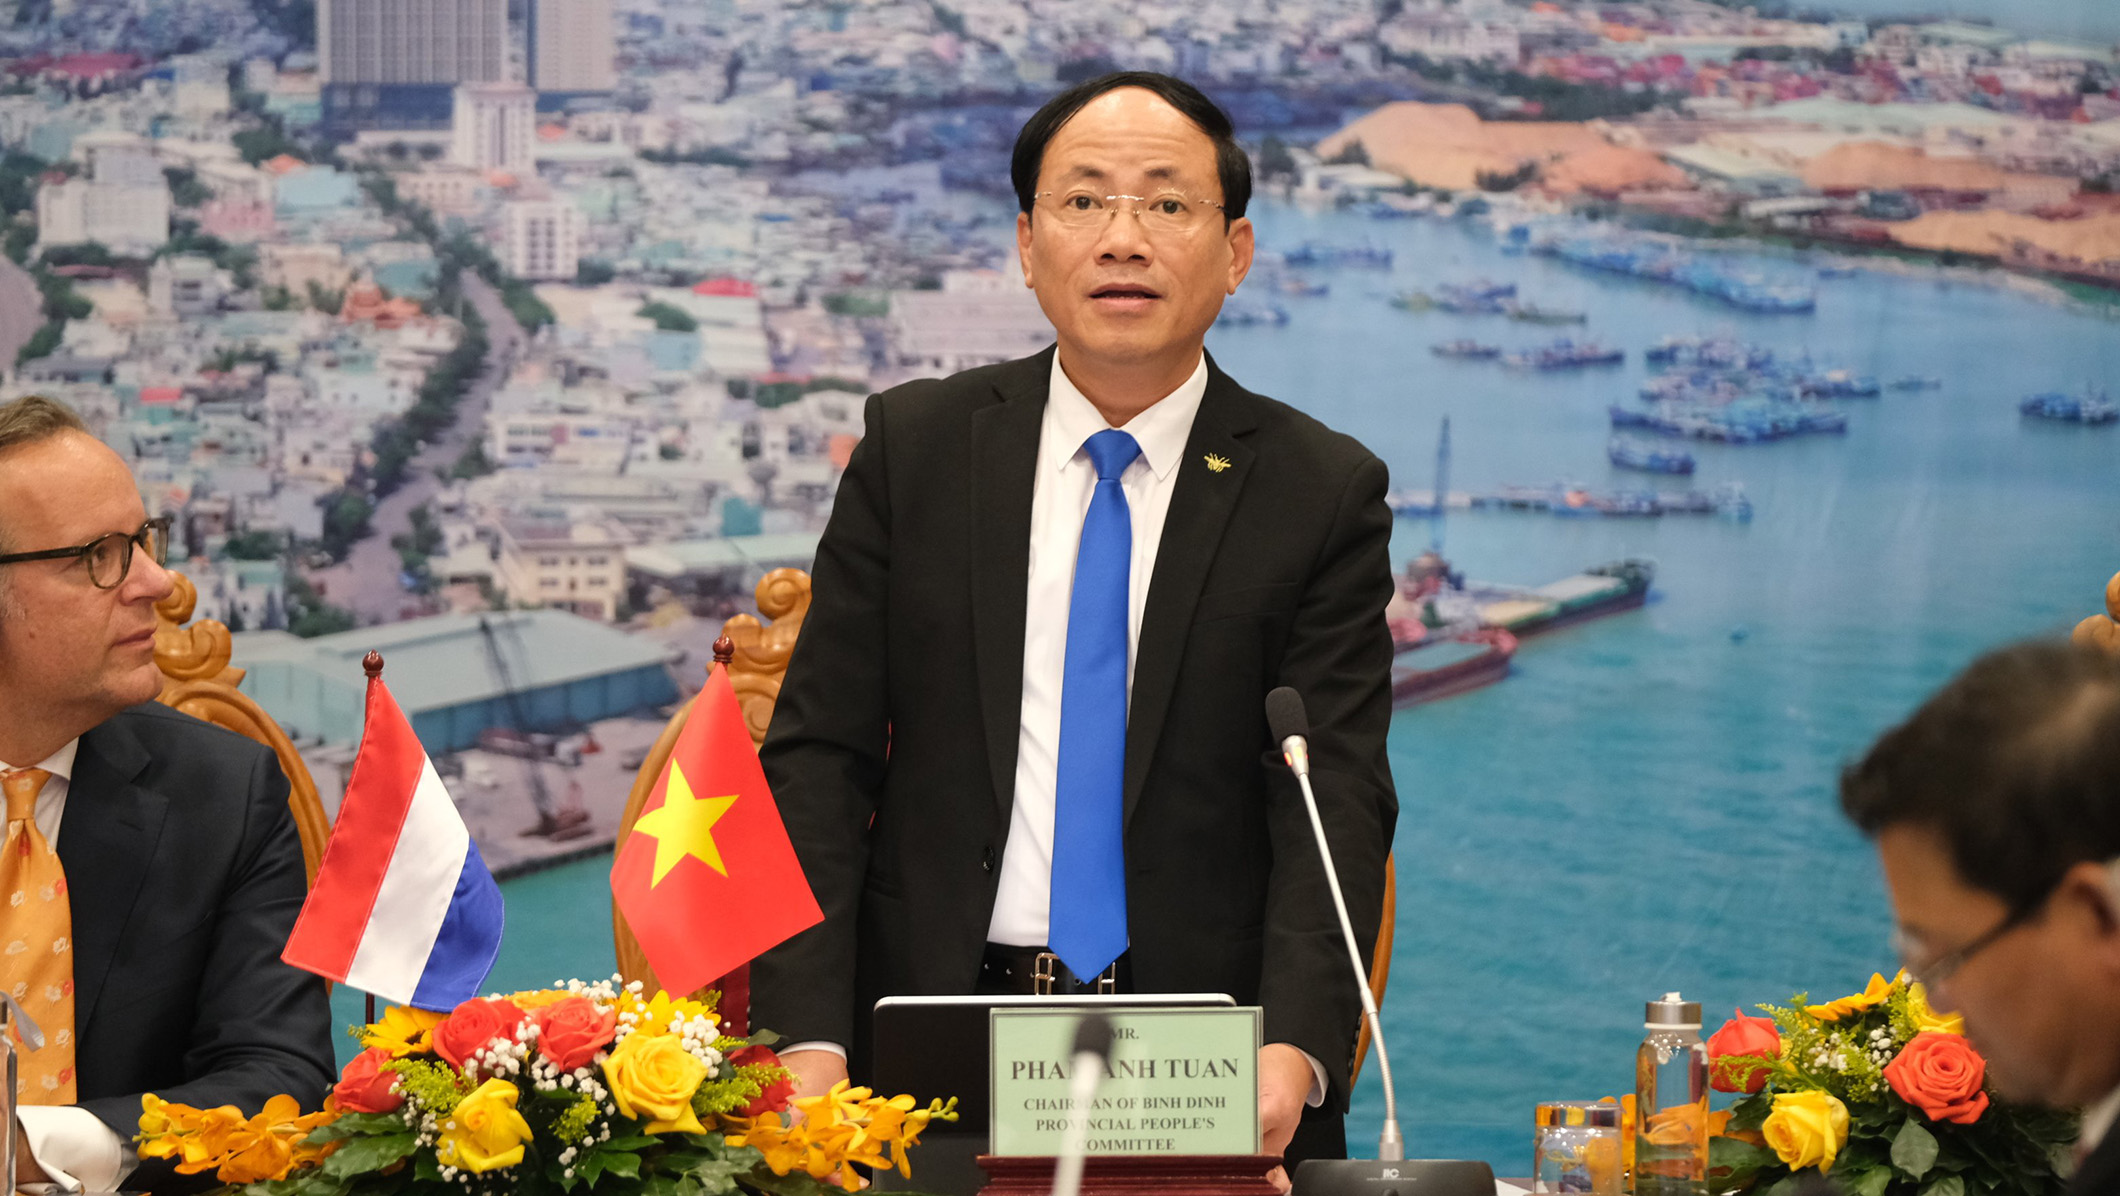 Đồng chí Phạm Anh Tuấn – Chủ tịch UBND tỉnh Bình Định phát biểu khai mạc hội nghị.